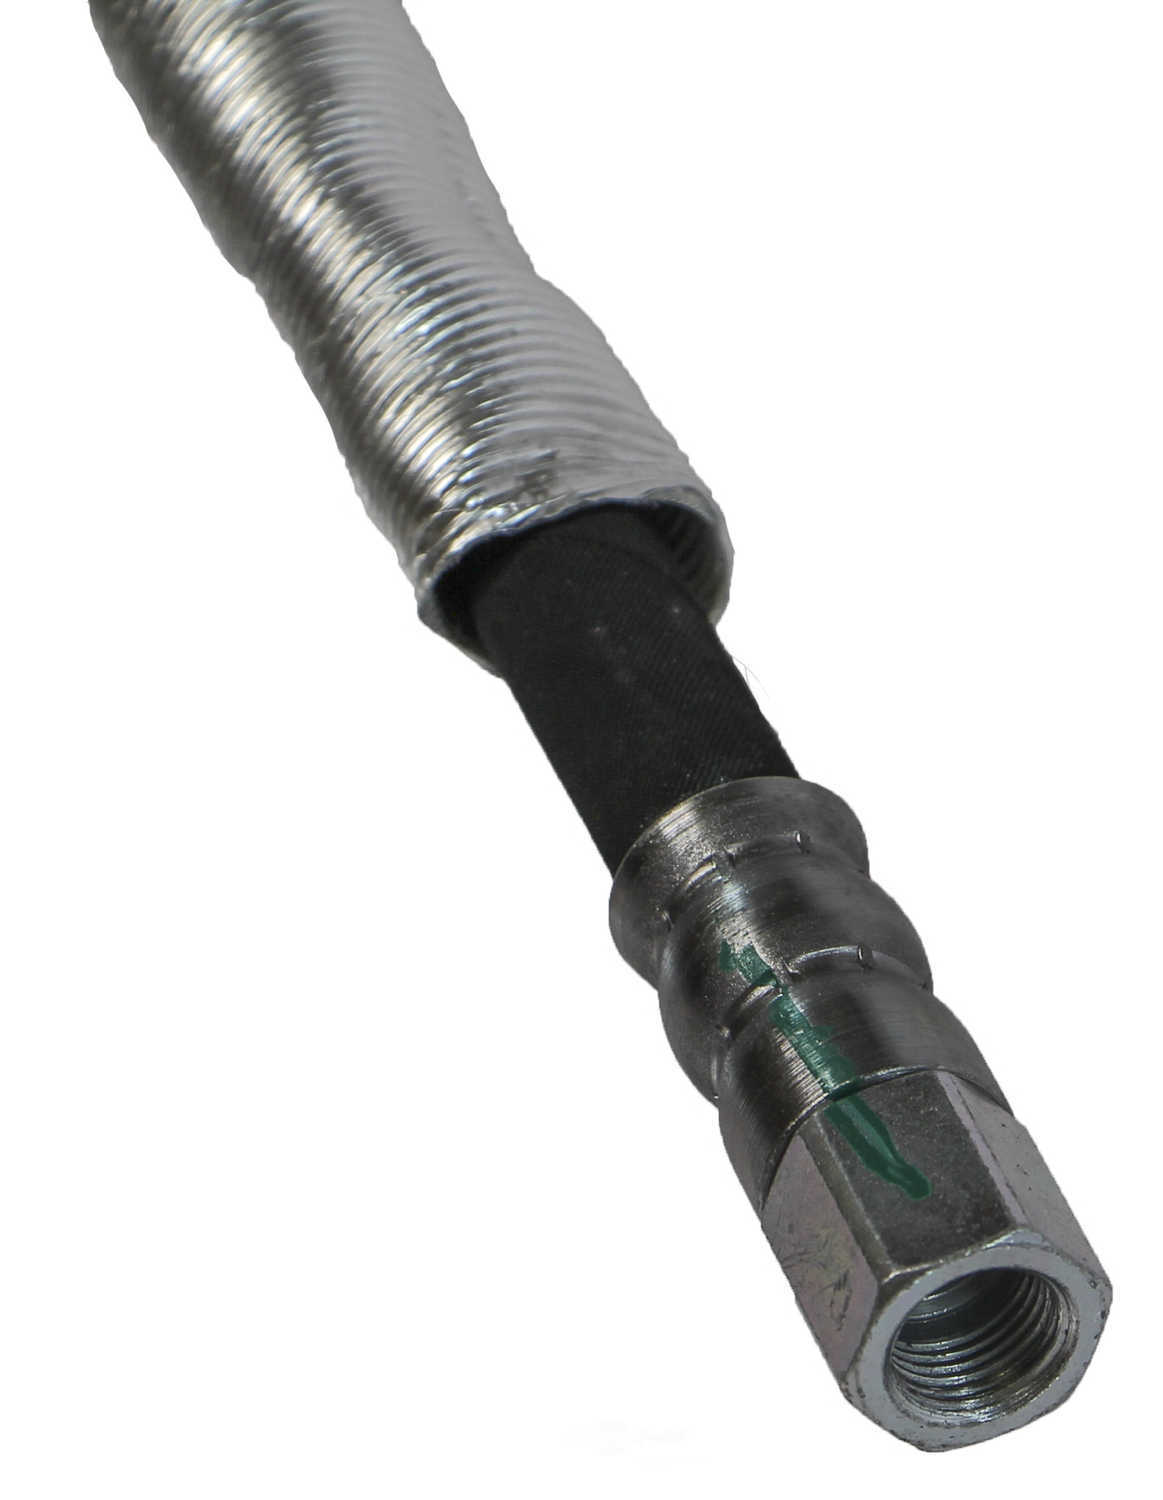 CRP/REIN - Power Steering Pressure Hose (Pump To Pipe) - CPD PSH0385